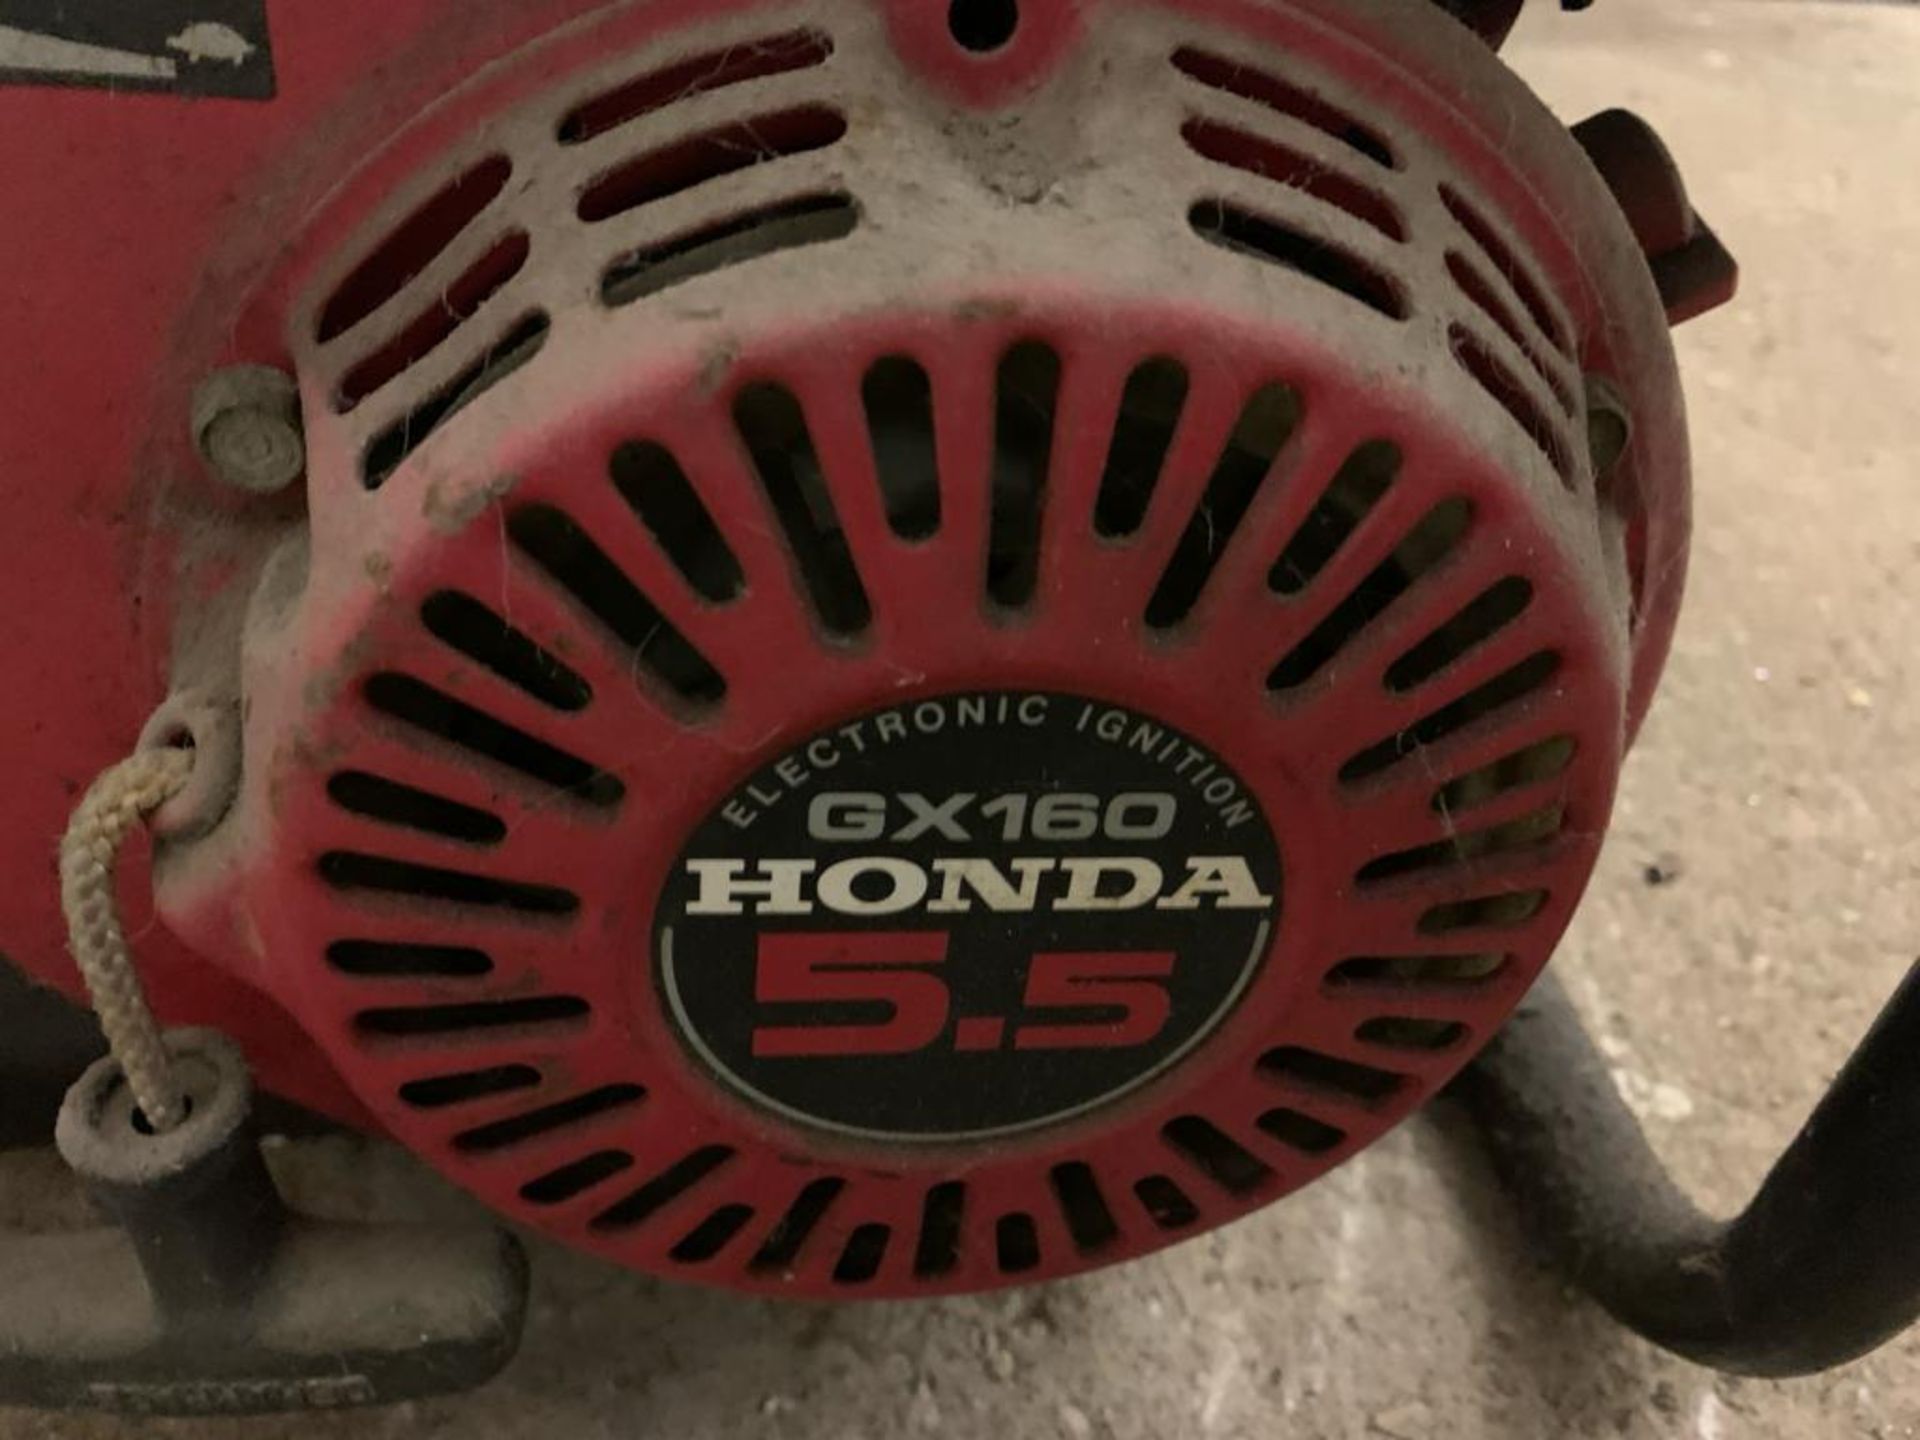 Honda GX160 5.5 Dual Power Wash petrol generator - Image 2 of 3